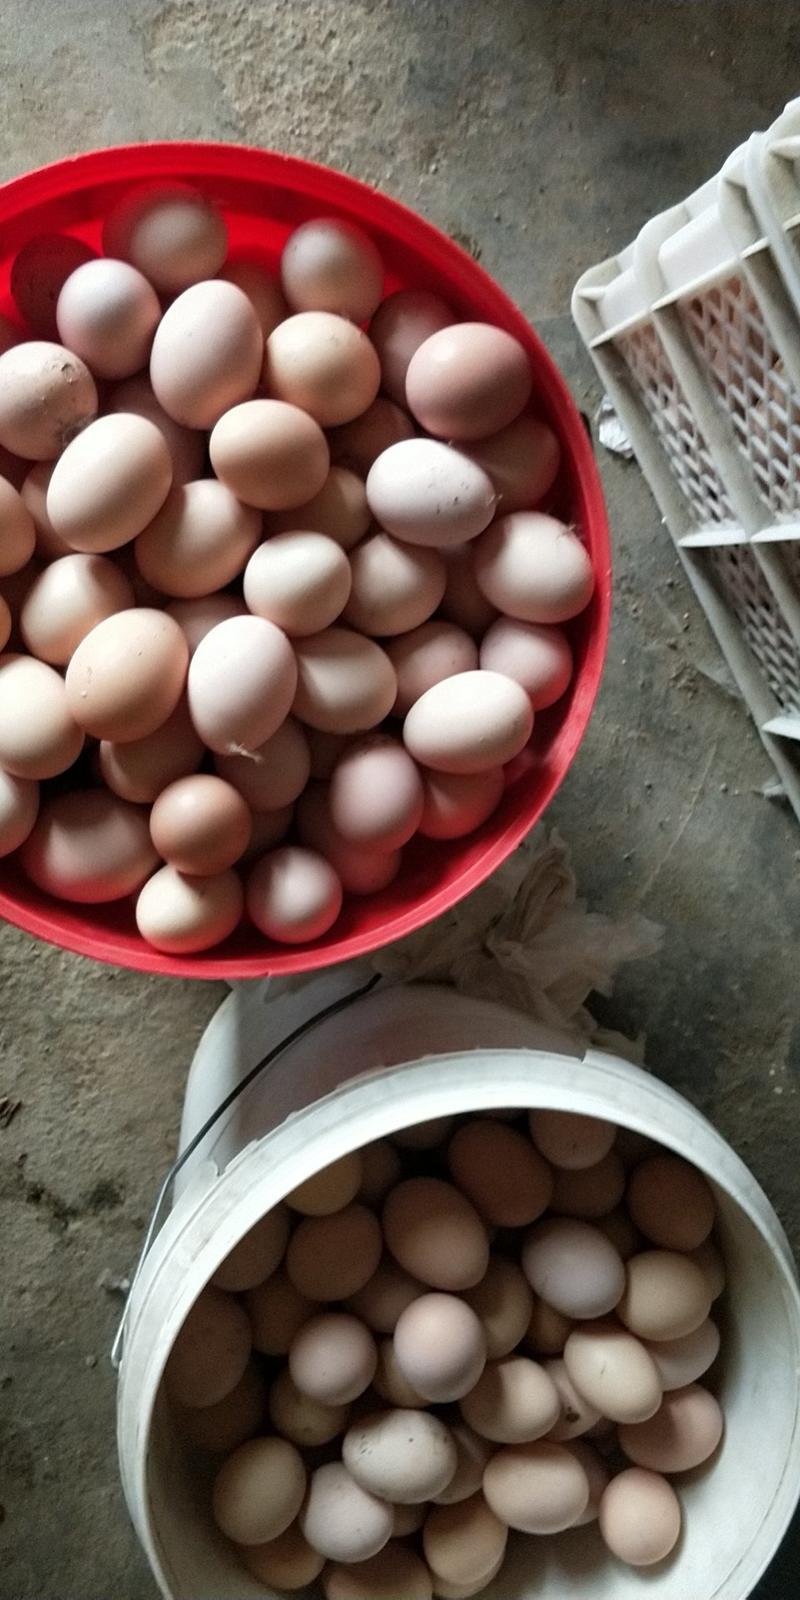 青脚鸡种蛋土鸡种蛋瑶鸡提供技术保障受精率，欢迎咨询